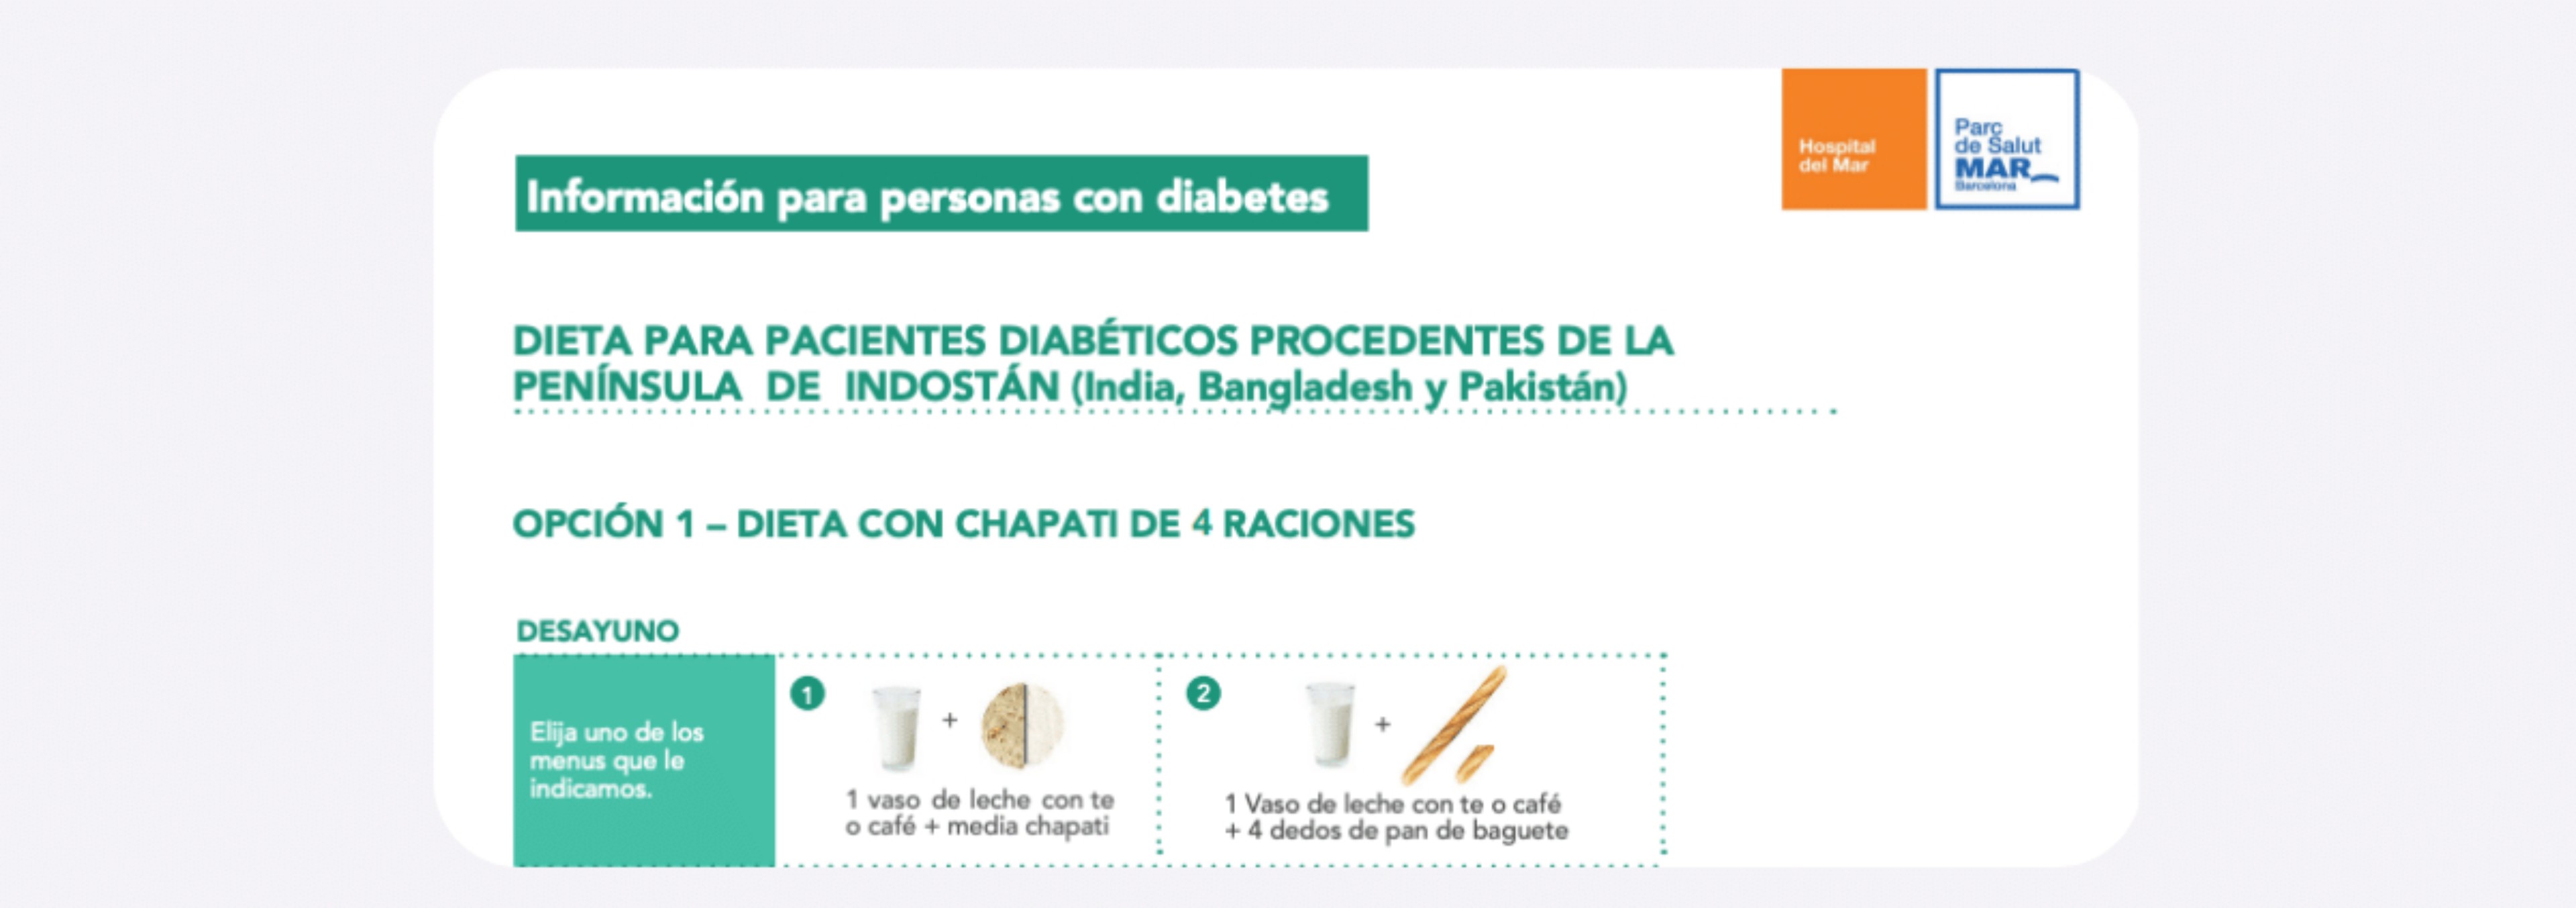 Plan alimentación 4 raciones de chapatis para personas con diabetes